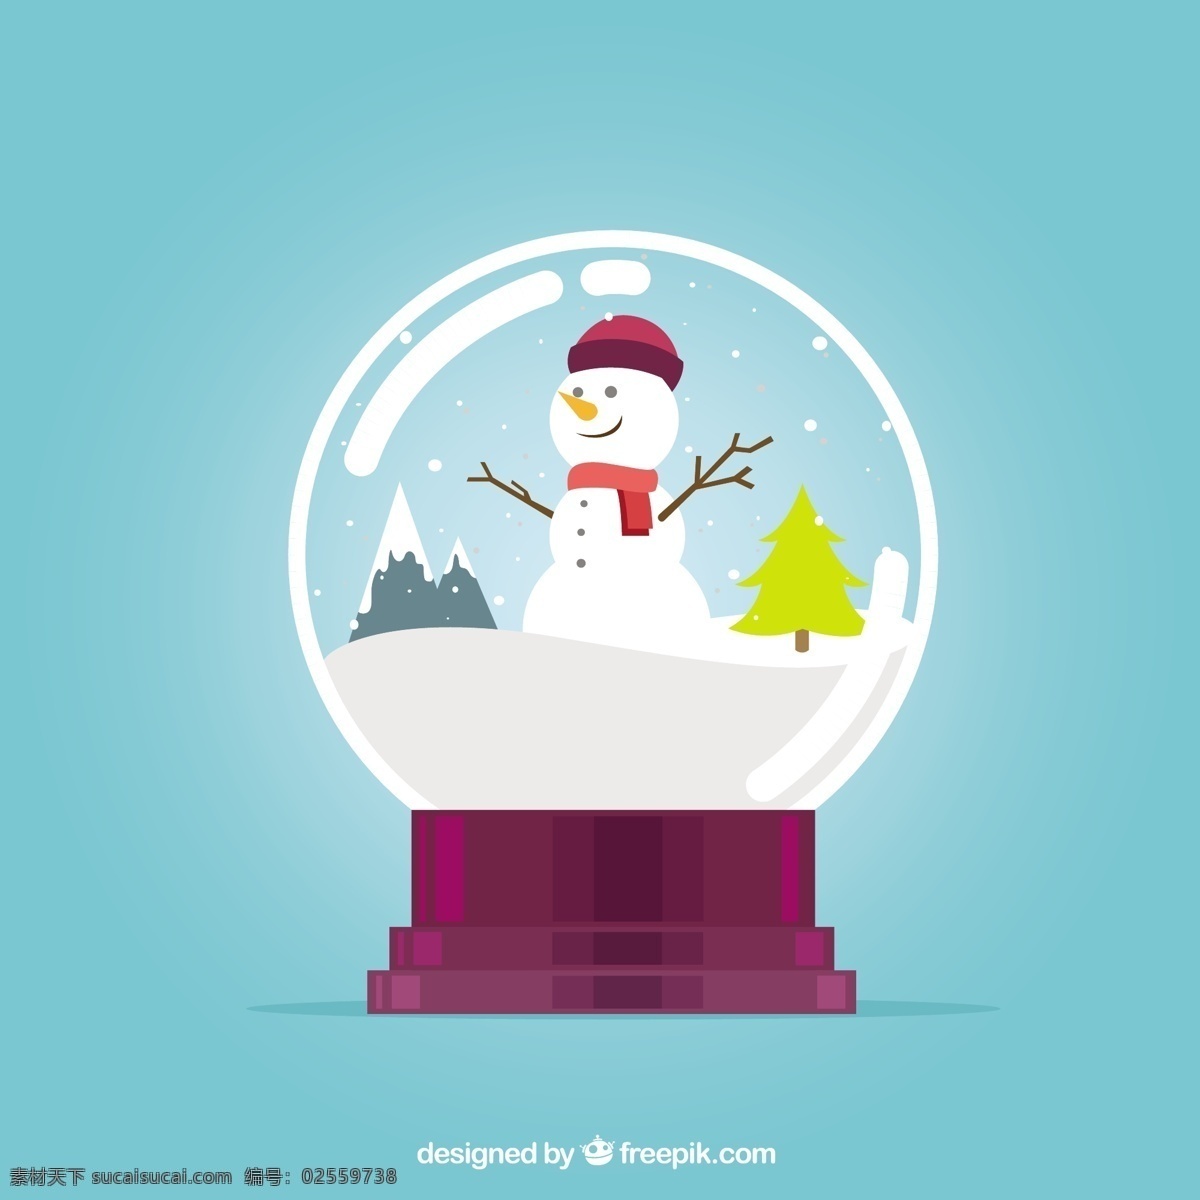 快乐 雪人 雪 中 圣诞节 圣诞快乐 冬天 地球 庆祝的节日 堆雪人 球 节日快乐 水晶 圣诞球 季节 节日 十二月 水晶球 青色 天蓝色